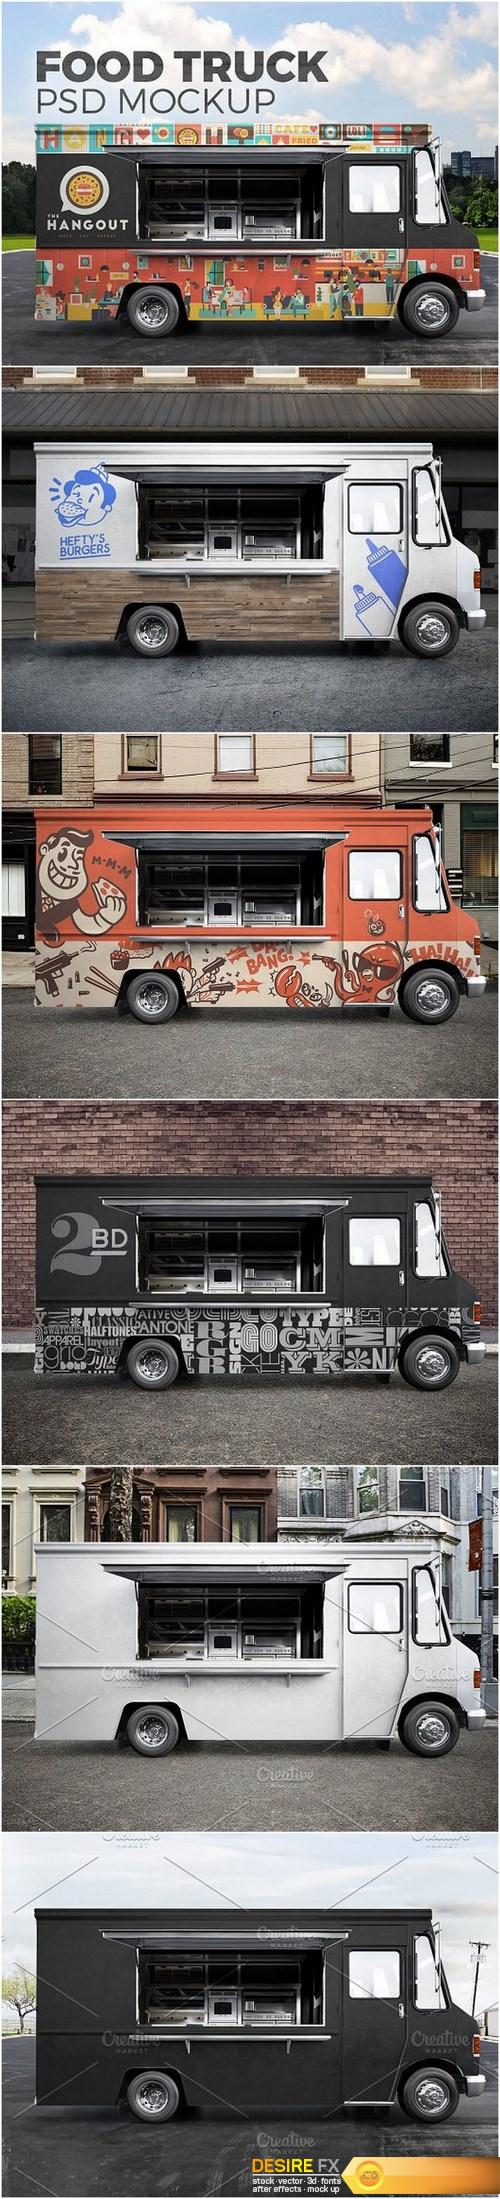 Food truck. PSD Mockup